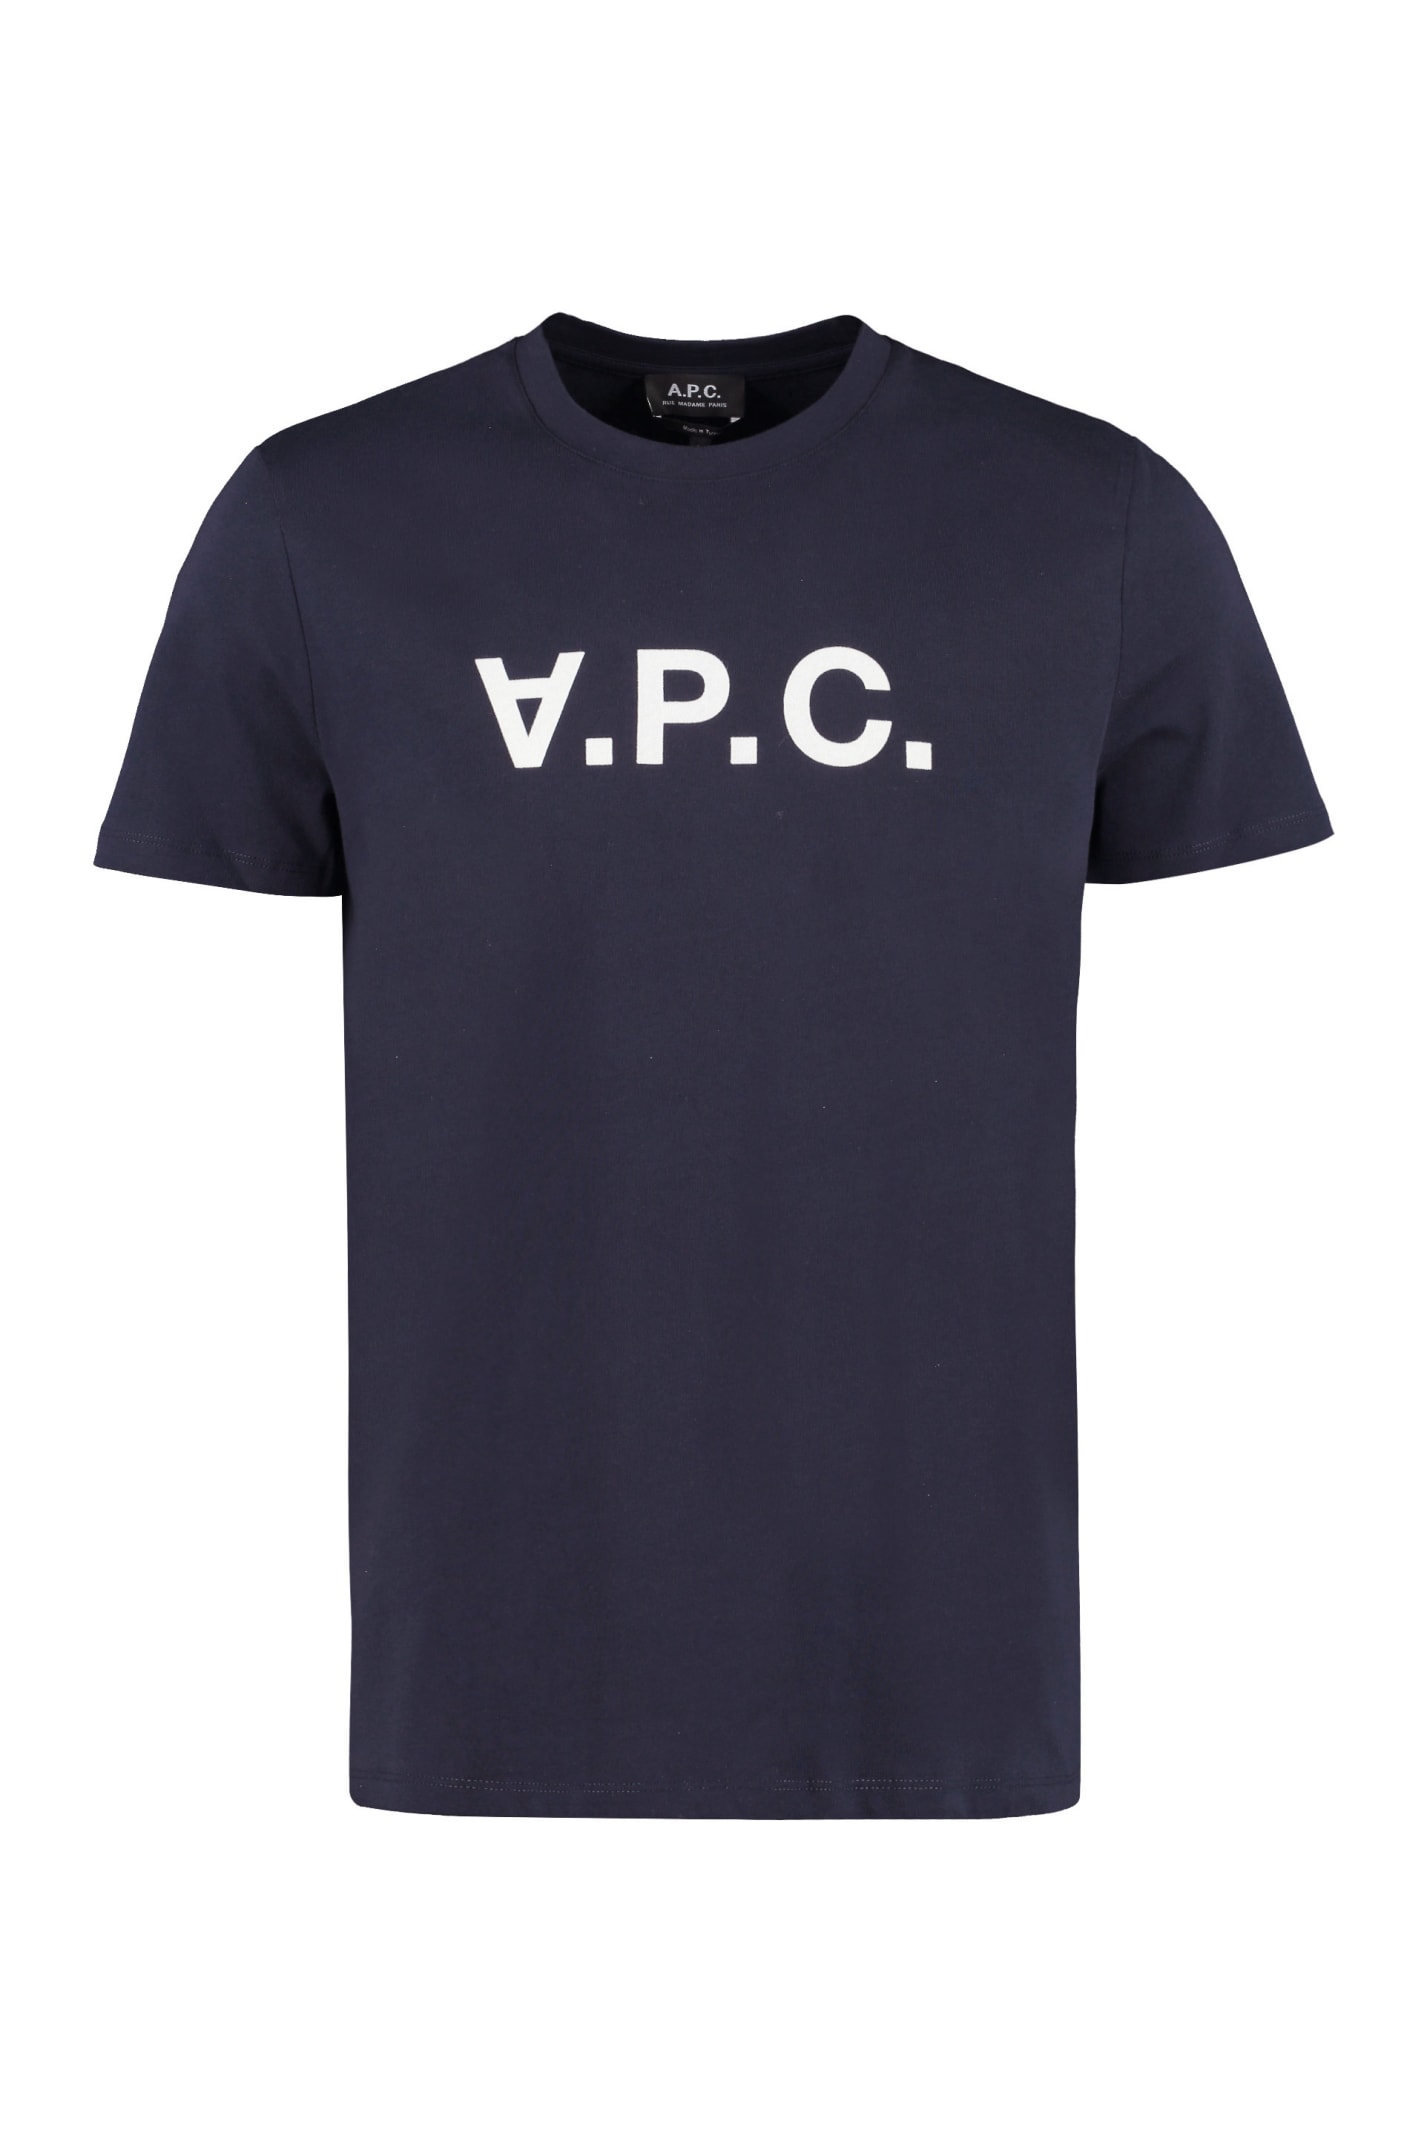 A.P.C. Cotton Crew-neck T-shirt